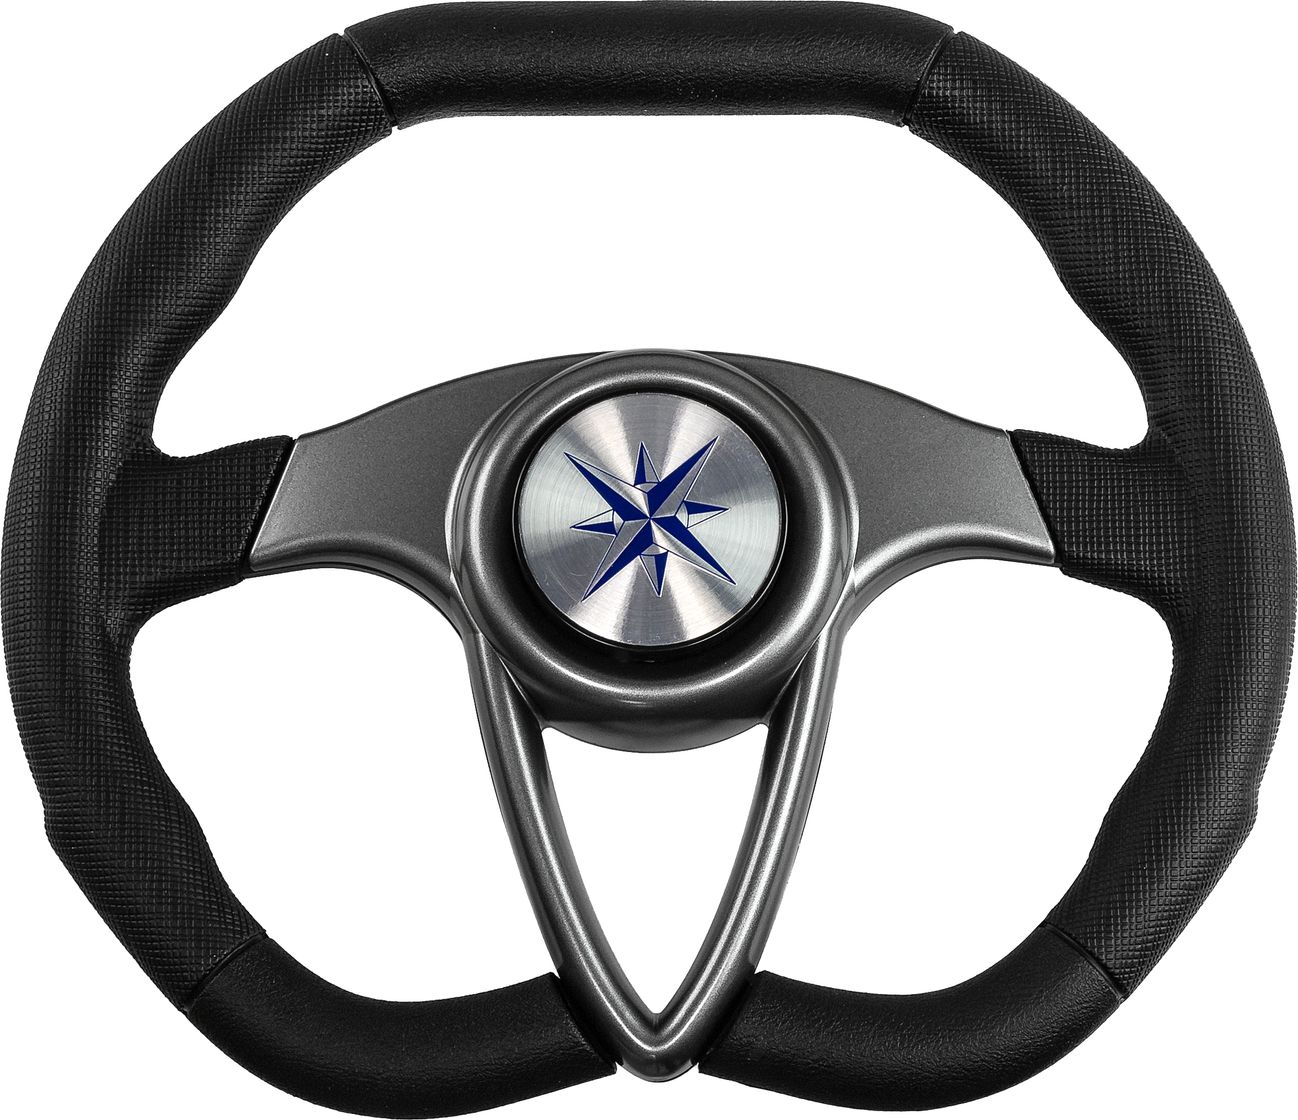 Рулевое колесо BARRACUDA обод черный, спицы серебряные д. 350 мм VN135002-01 рулевое колесо orion обод спицы серебряные д 355 мм vn960101 01